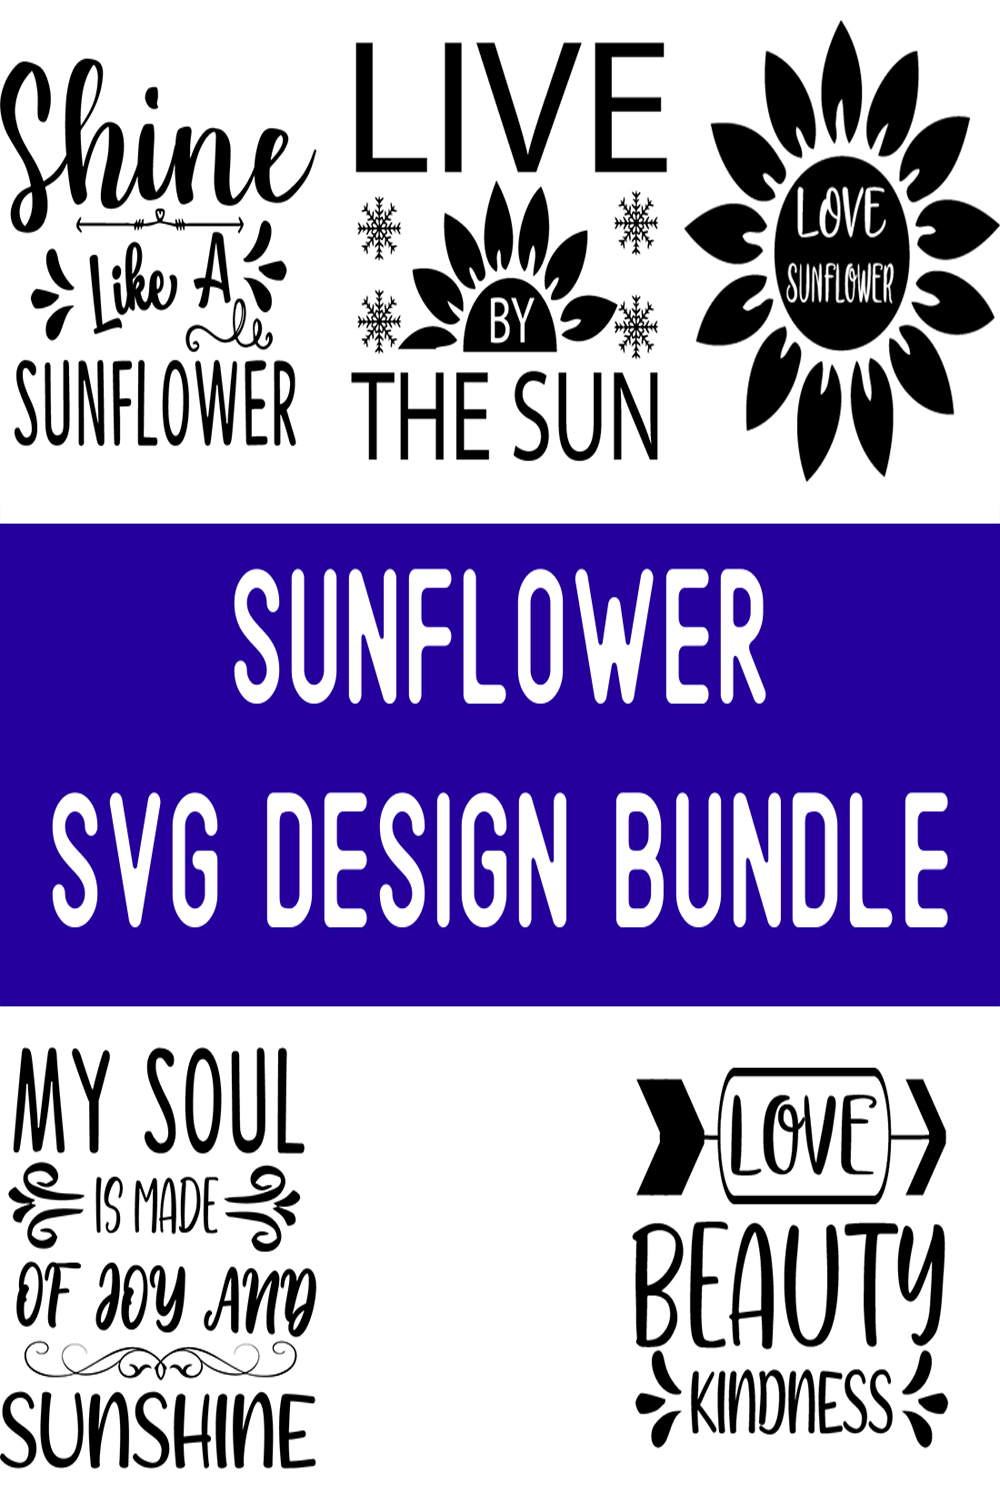 sunflower SVG Design Bundle pinterest preview image.